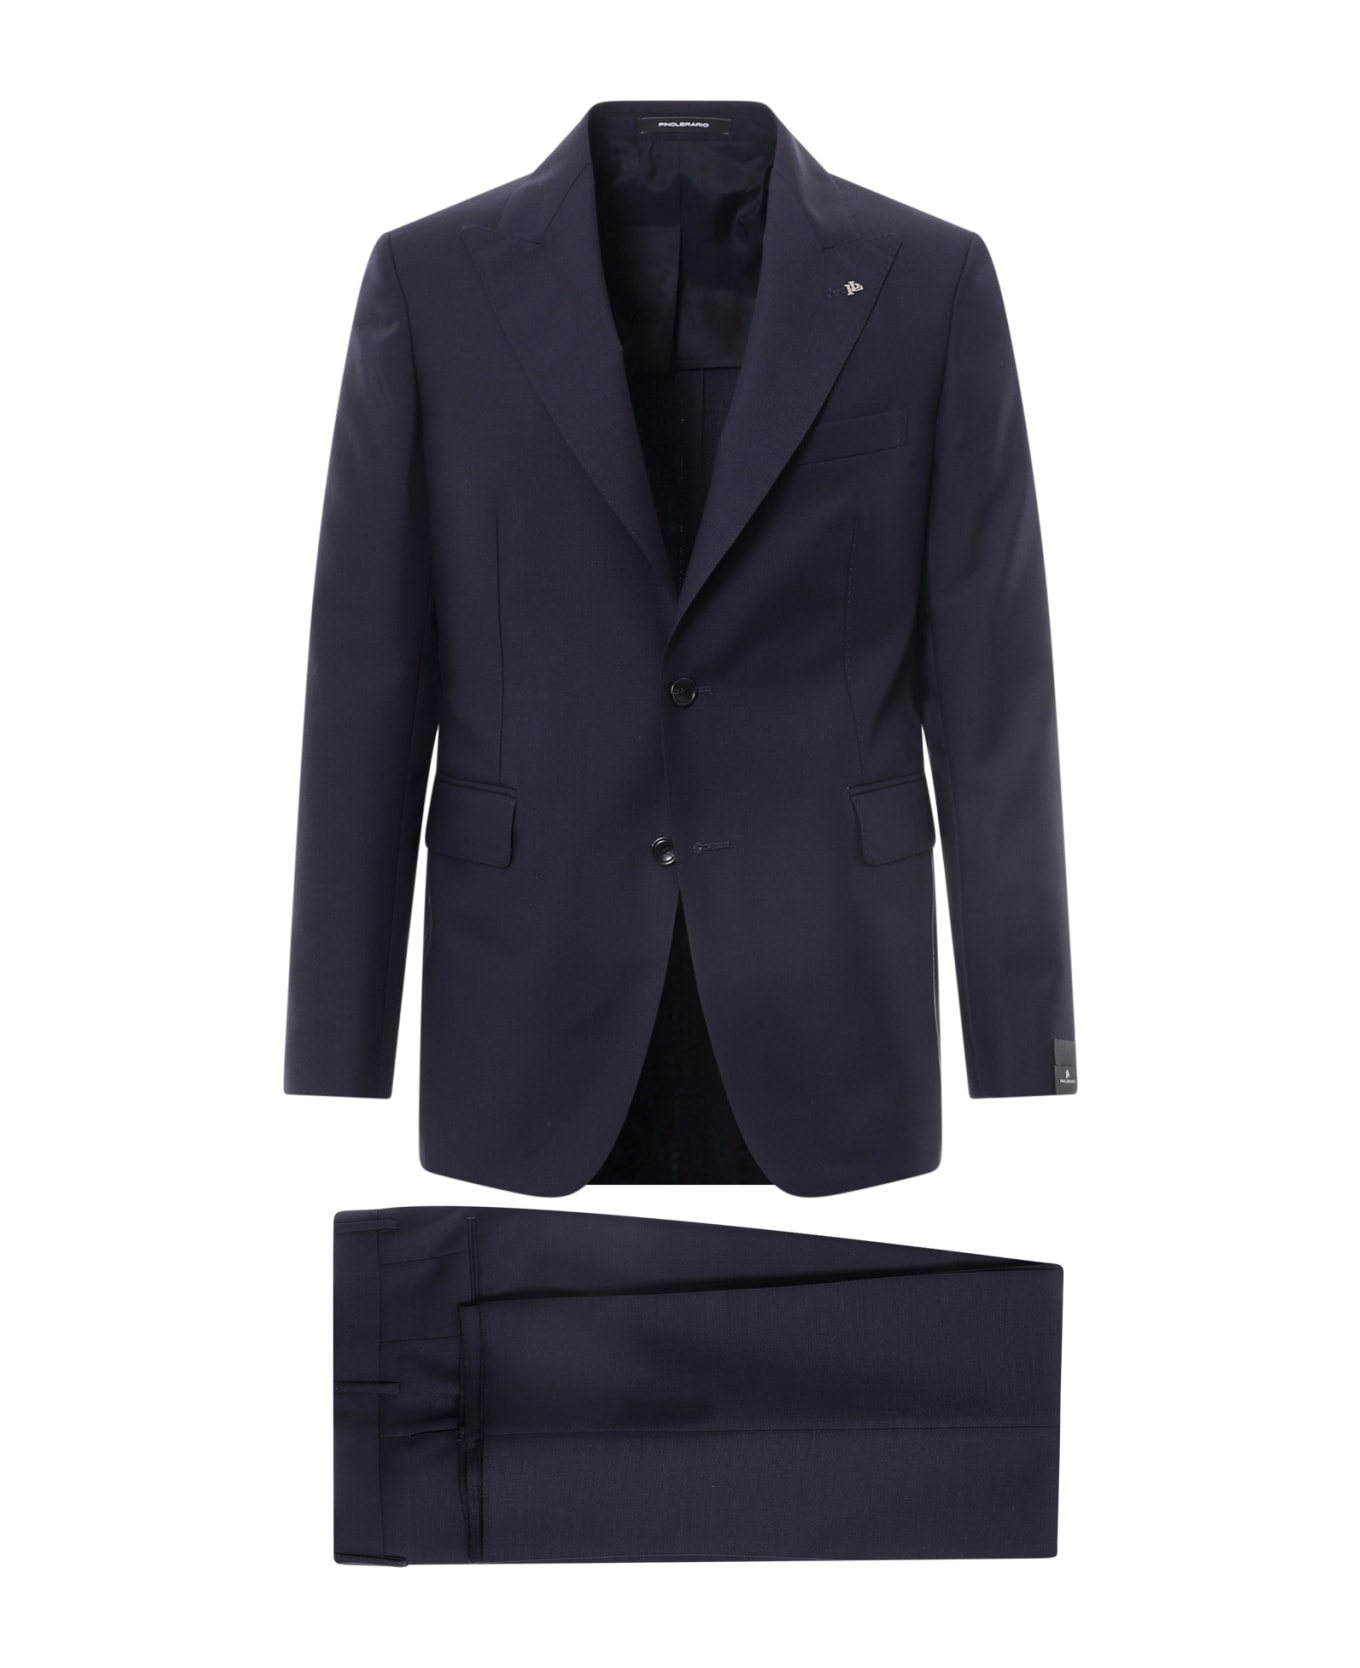 Tagliatore Suit - Blue